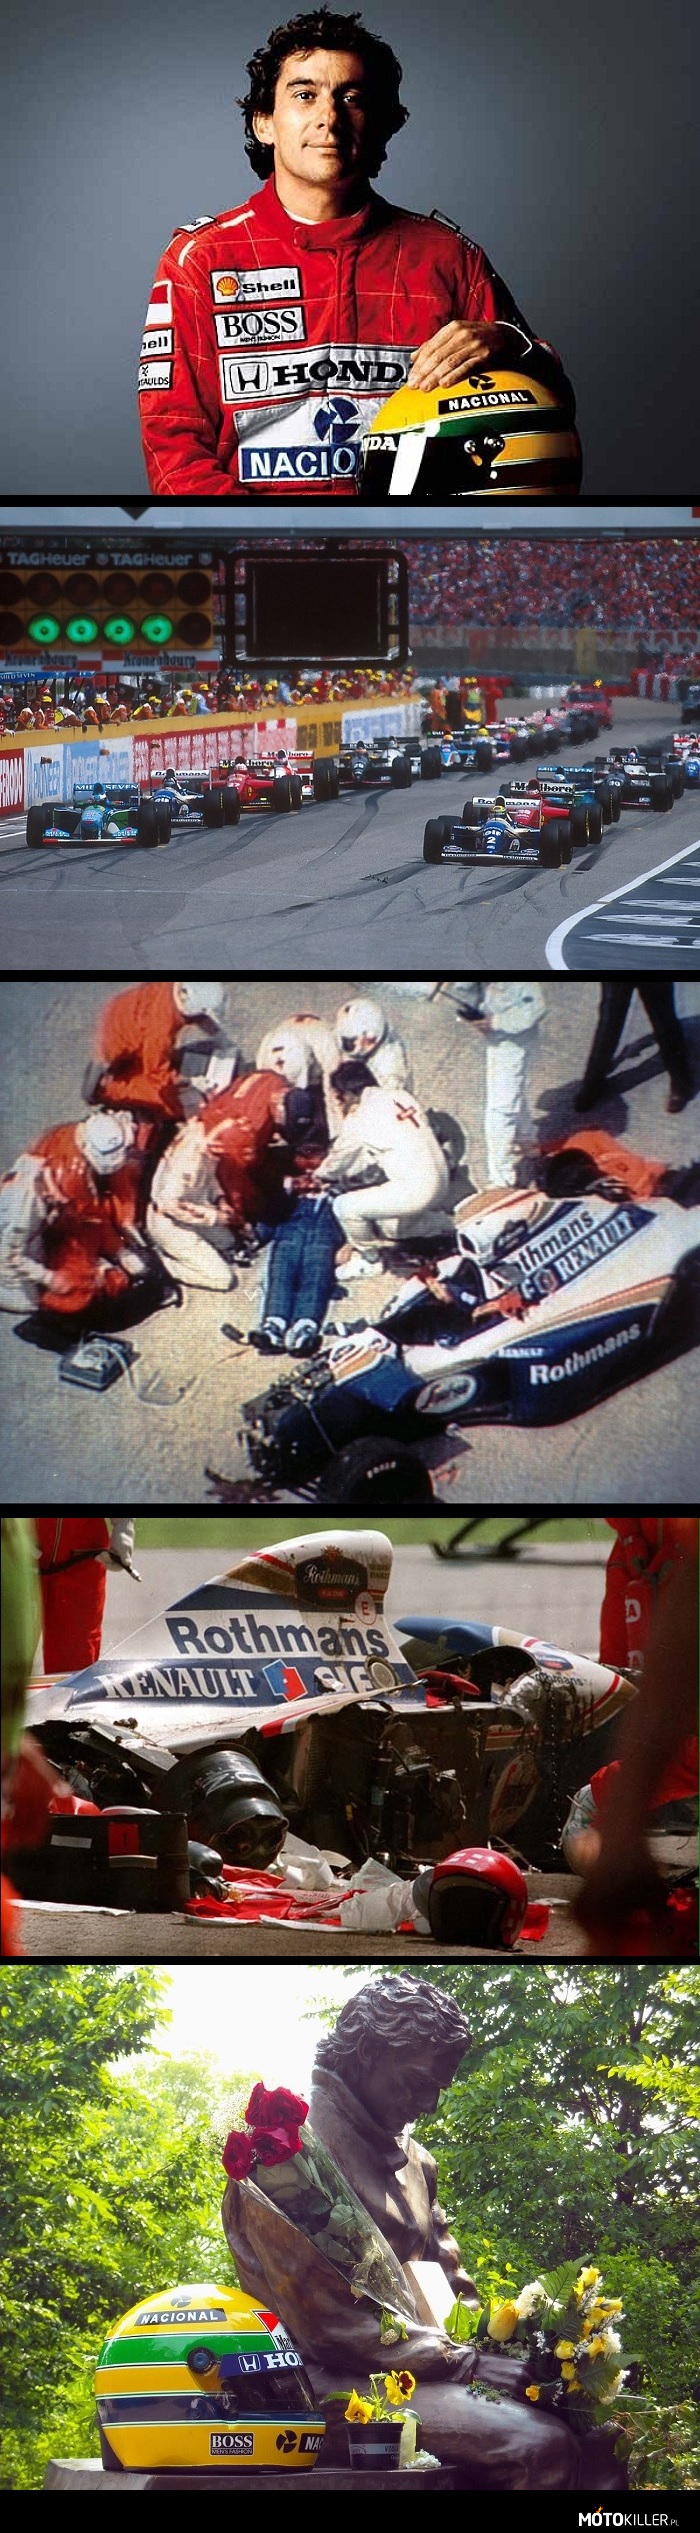 Ayrton Senna 1960-1994 – Dzisiaj przypada 20-ta rocznica tragicznego wypadku w którym zginął jeden z najlepszych kierowców F1 wszechczasów. Zginął na torze Imola podczas GP San Marino, znane jest jako &quot;Czarny Weekend&quot;, gdyż już podczas piątkowych porannych treningów Rubens Barrichello uległ ciężkiemu wypadkowi, a podczas kwalifikacji na skutek uszkodzenia przedniego spoilera Roland Ratzenberger wypadł z toru na szybkim zakręcie Villeneuve i uderzył w betonową barierę, ginąc na miejscu wypadku. Następnego dnia, tuż po starcie wyścigu doszło do poważnego wypadku. Po zderzeniu Benettona JJ Lehto i Lotusa Pedro Lamy&apos;ego na tor wyjechał samochód bezpieczeństwa. O pierwszą pozycję na nierozgrzanych oponach walczyli trzykrotny mistrz świata Ayrton Senna w Williamsie i Niemiec Michael Schumacher w Benettonie. Na bardzo szybkim zakręcie &quot;Tamburello&quot; Brazylijczyk (z niewyjaśnionych do dzisiaj przyczyn, przyjmuje się jednak, że przyczyną było pęknięcia drążka kierowniczego) zjechał na zewnętrzną stronę toru, po czym uderzył w barierę. Brazylijczyka odwieziono do szpitala, gdzie kilka godzin później zmarł. Był to najtragiczniejszy weekend wyścigowy w Formule 1 od Grand Prix Belgii 1960 kiedy to zginęli Chris Bristow i Alan Stacey.  Po tym tragicznym wydarzeniu niektóre zakręty zostały przebudowane. 